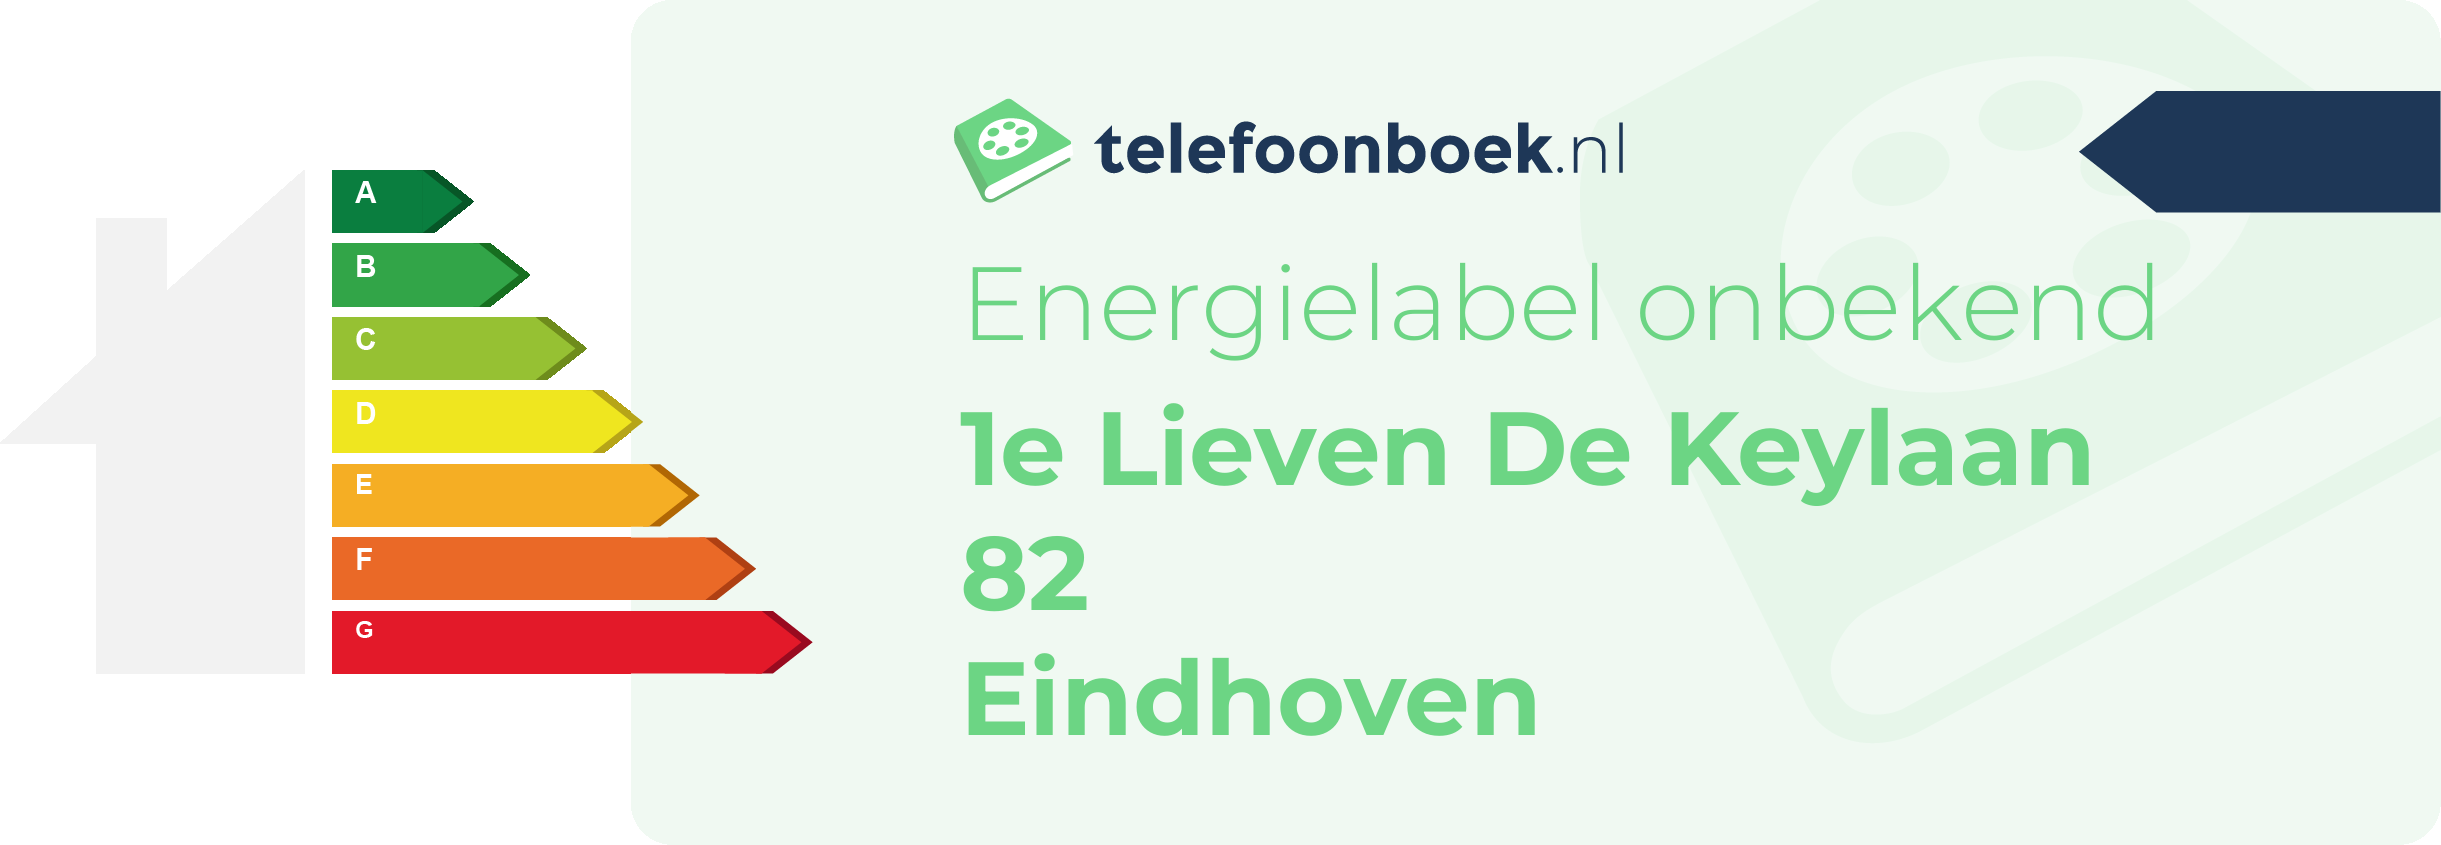 Energielabel 1e Lieven De Keylaan 82 Eindhoven